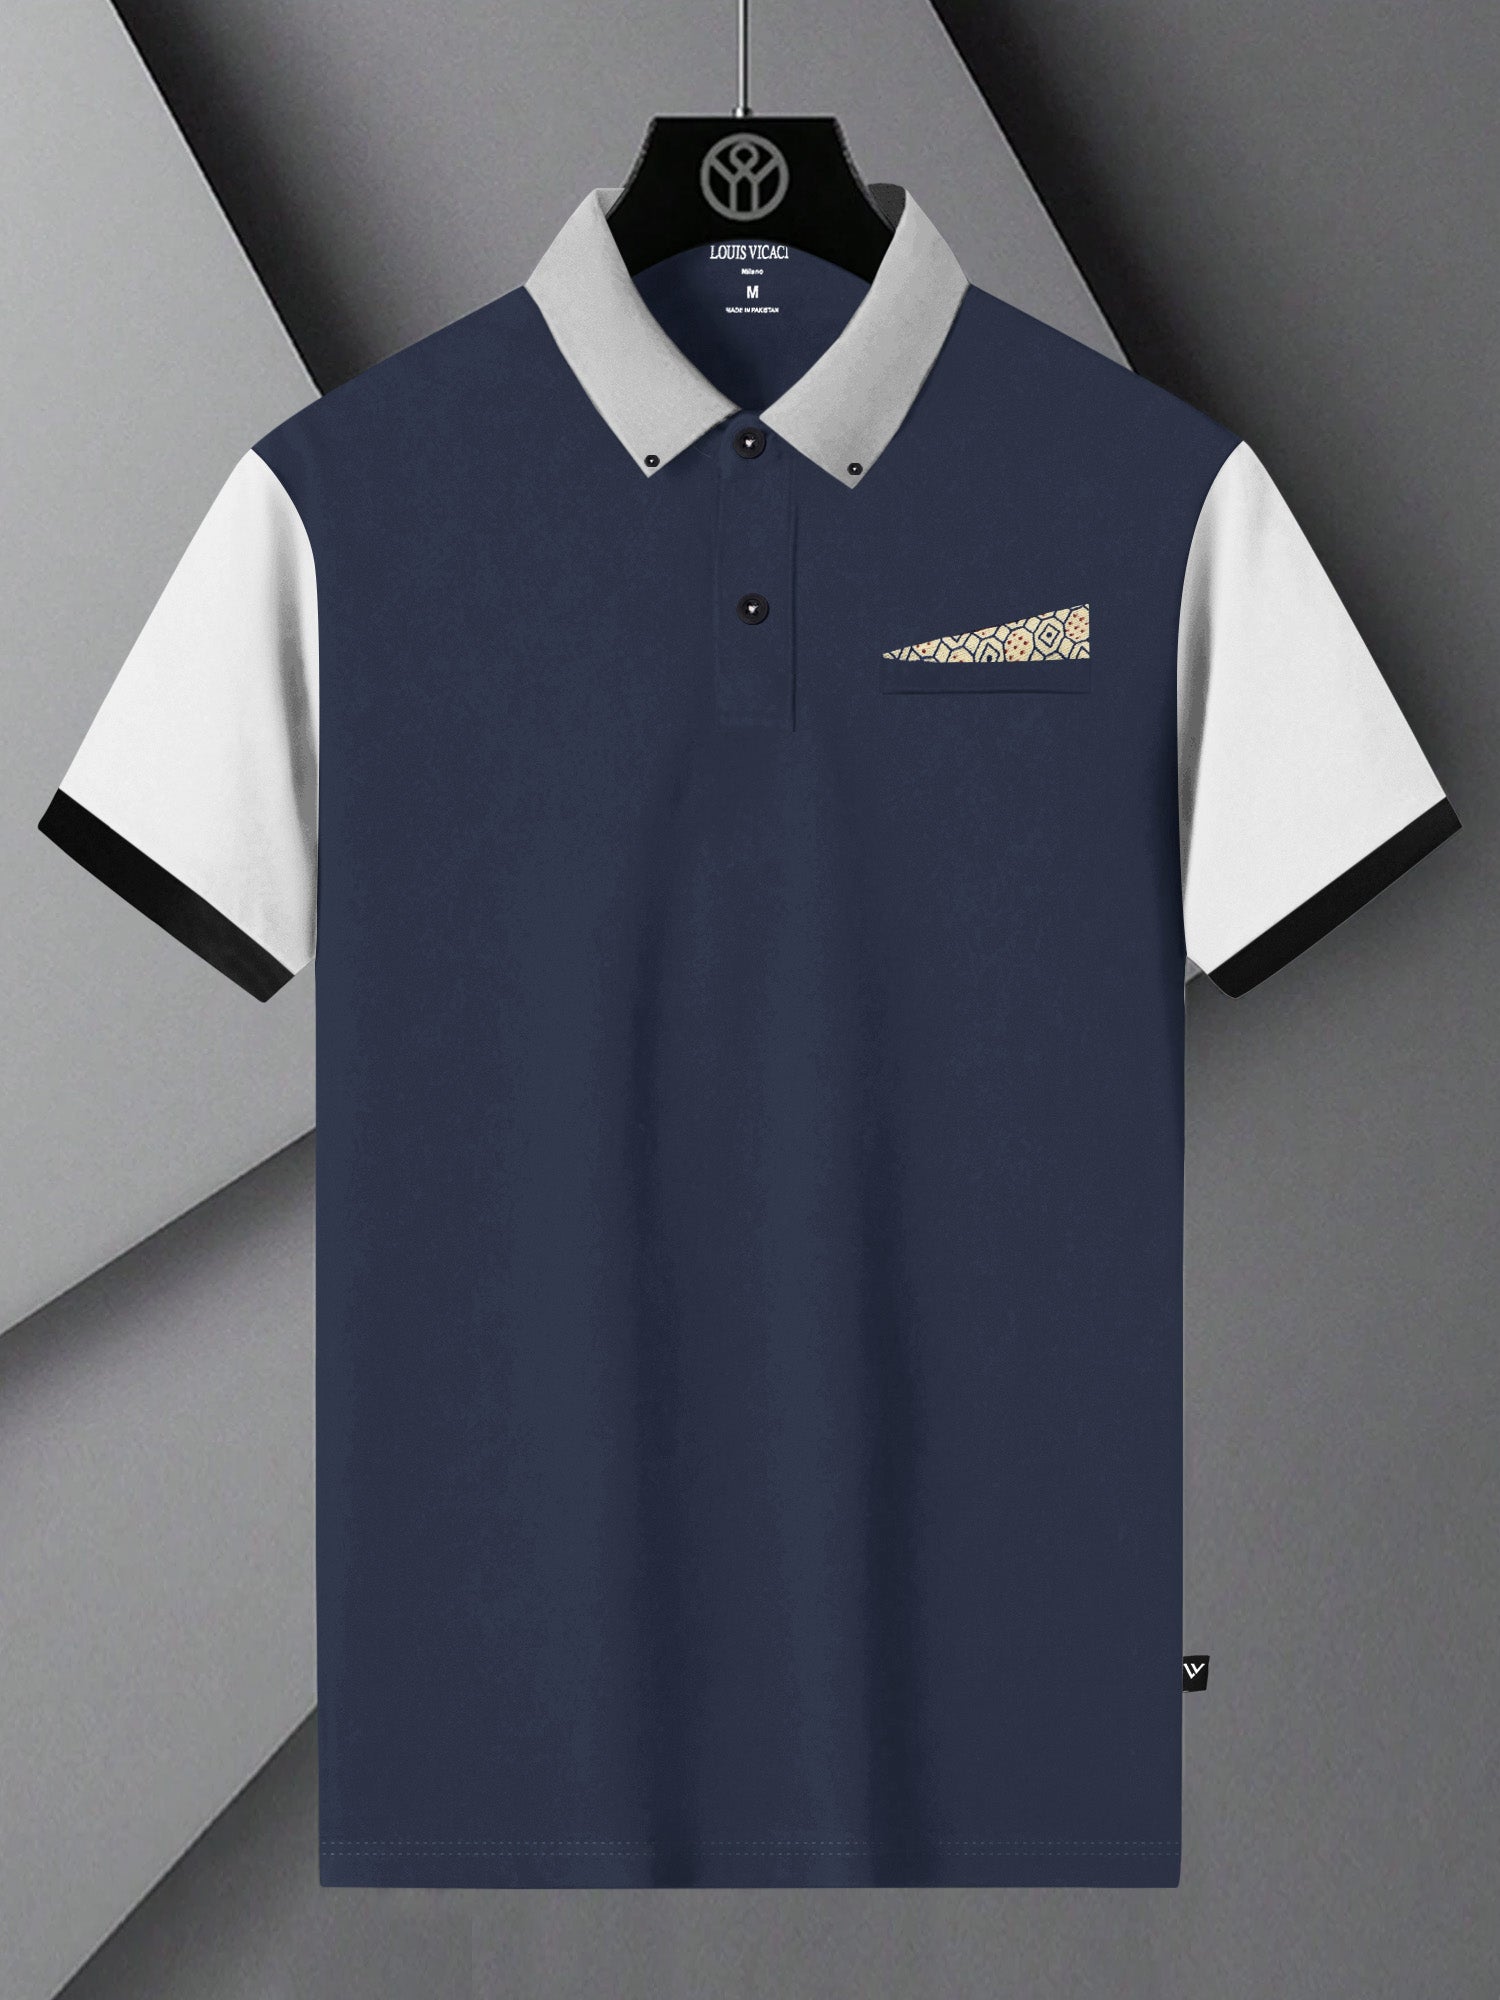 LV Summer Polo Shirt For Men-Navy & White-BE803/BR13044